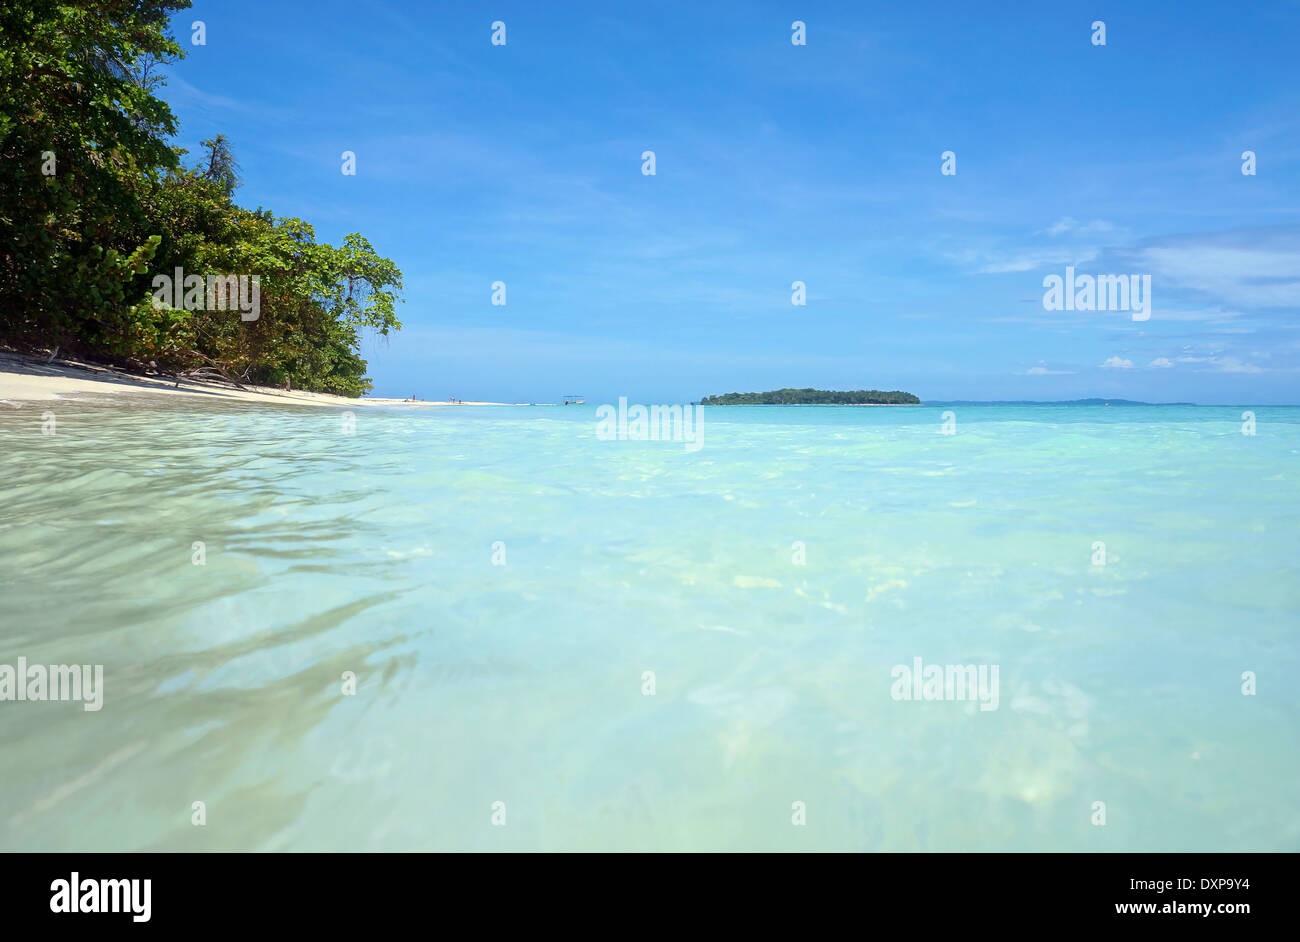 À partir de la surface de l'eau, plage tropicale avec de l'eau turquoise et d'une île à l'horizon, la mer des Caraïbes, Zapatillas cays, Panama Banque D'Images